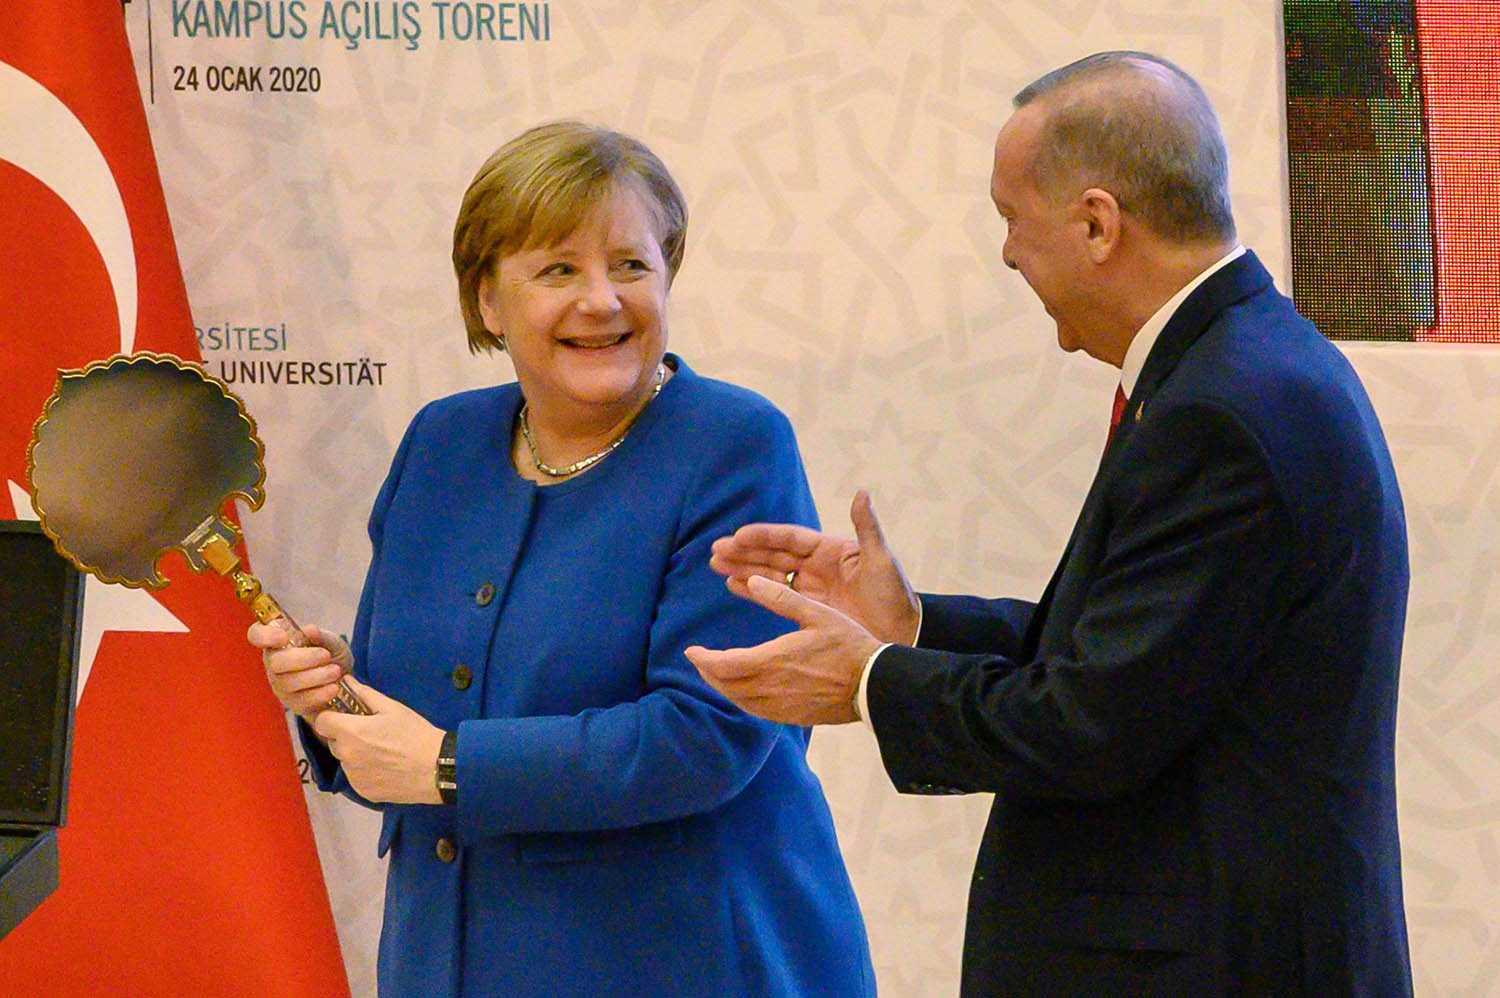 الرئيس التركي رجب طيب اردوغان والمستشارة الالمانية انغيلا ميركل